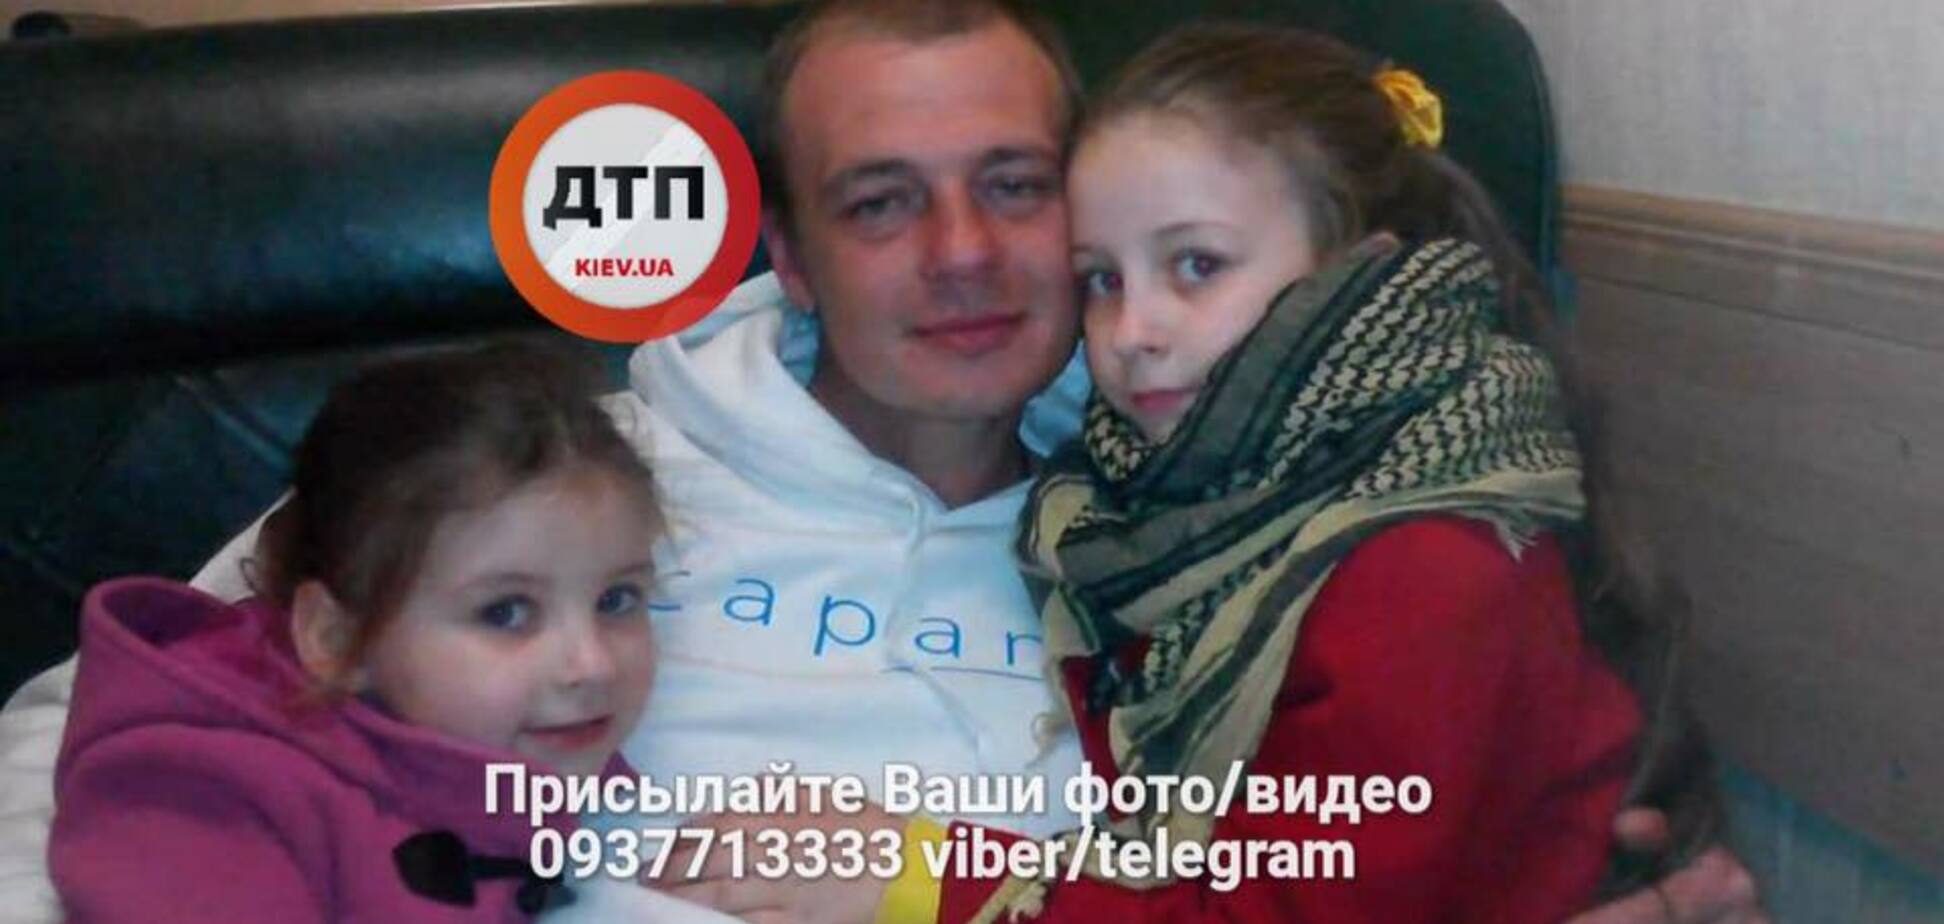 'Я люблю свою семью': в Киеве пропал мужчина с необычными приметами